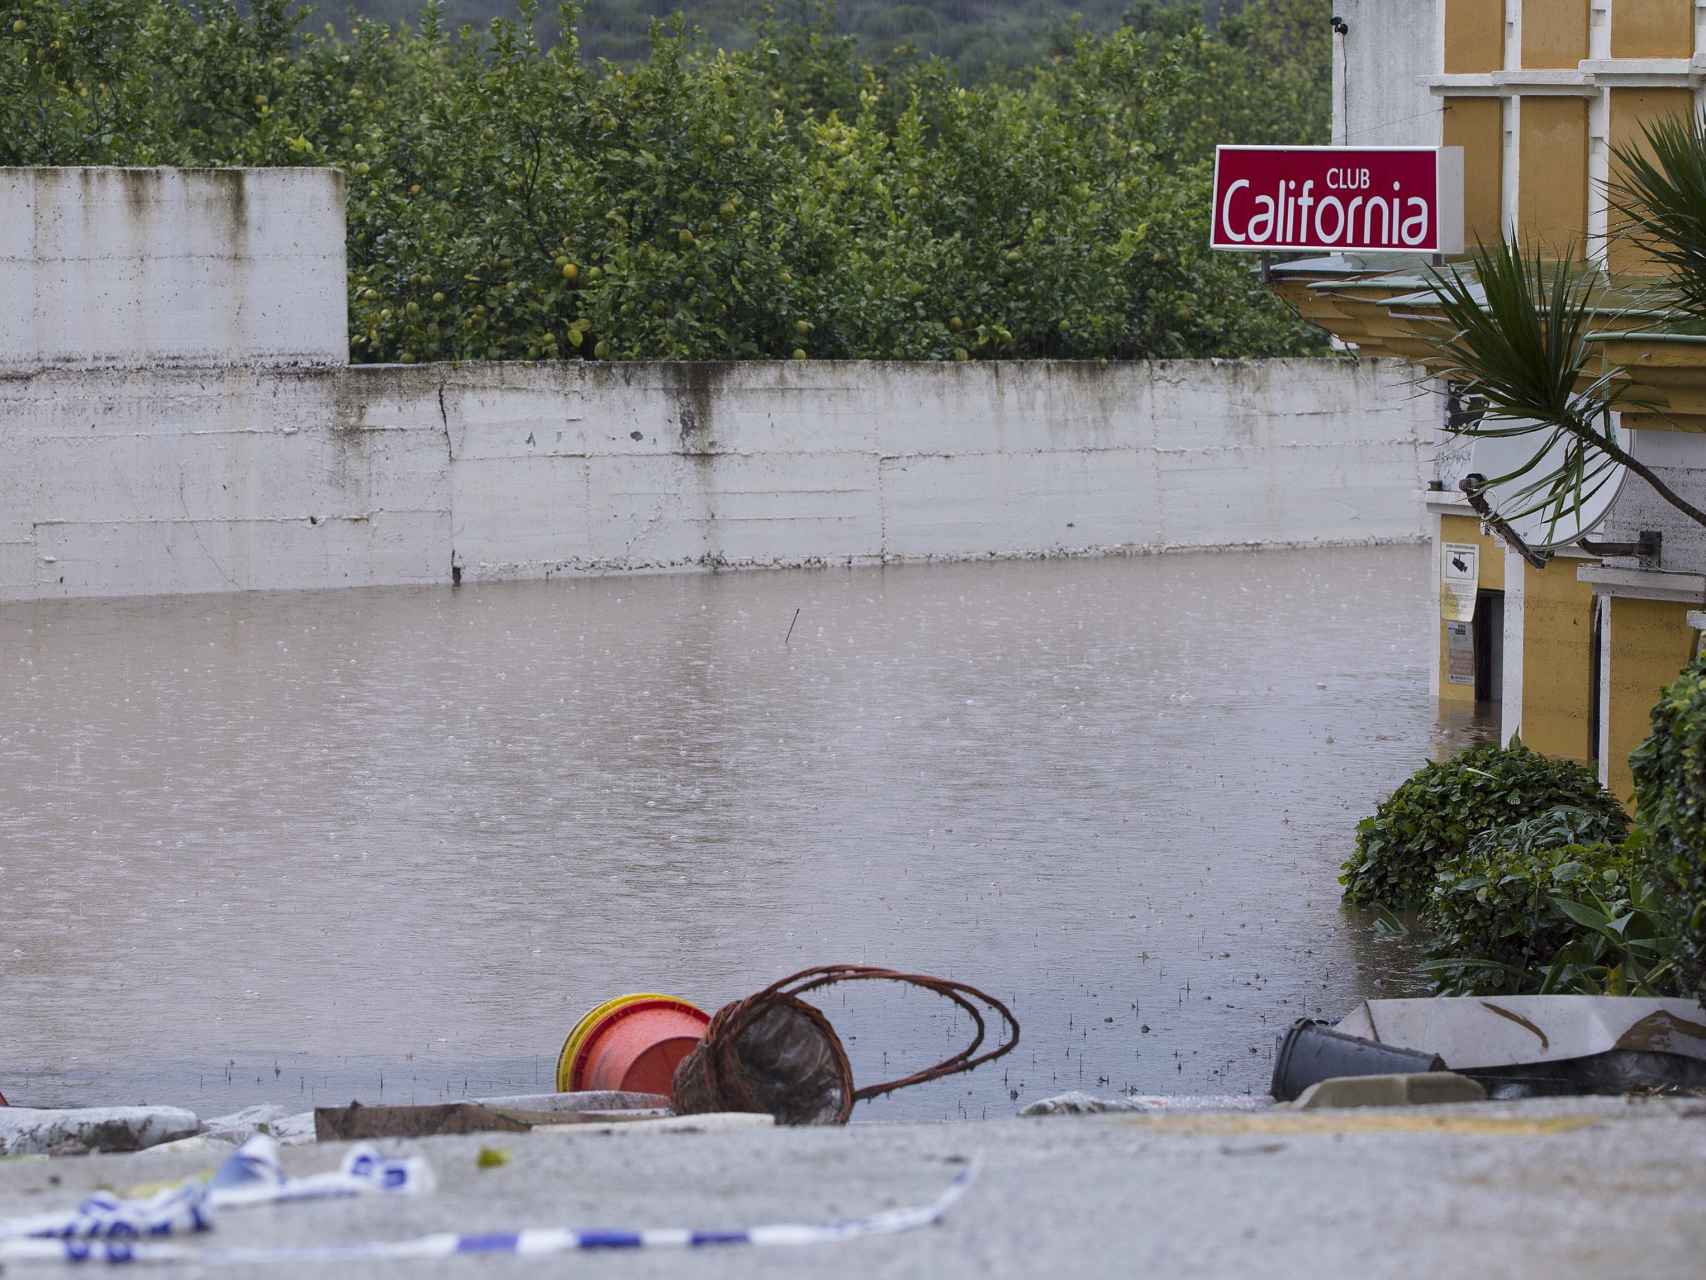 Vista del club California de Estepona inundado tras las lluvias.